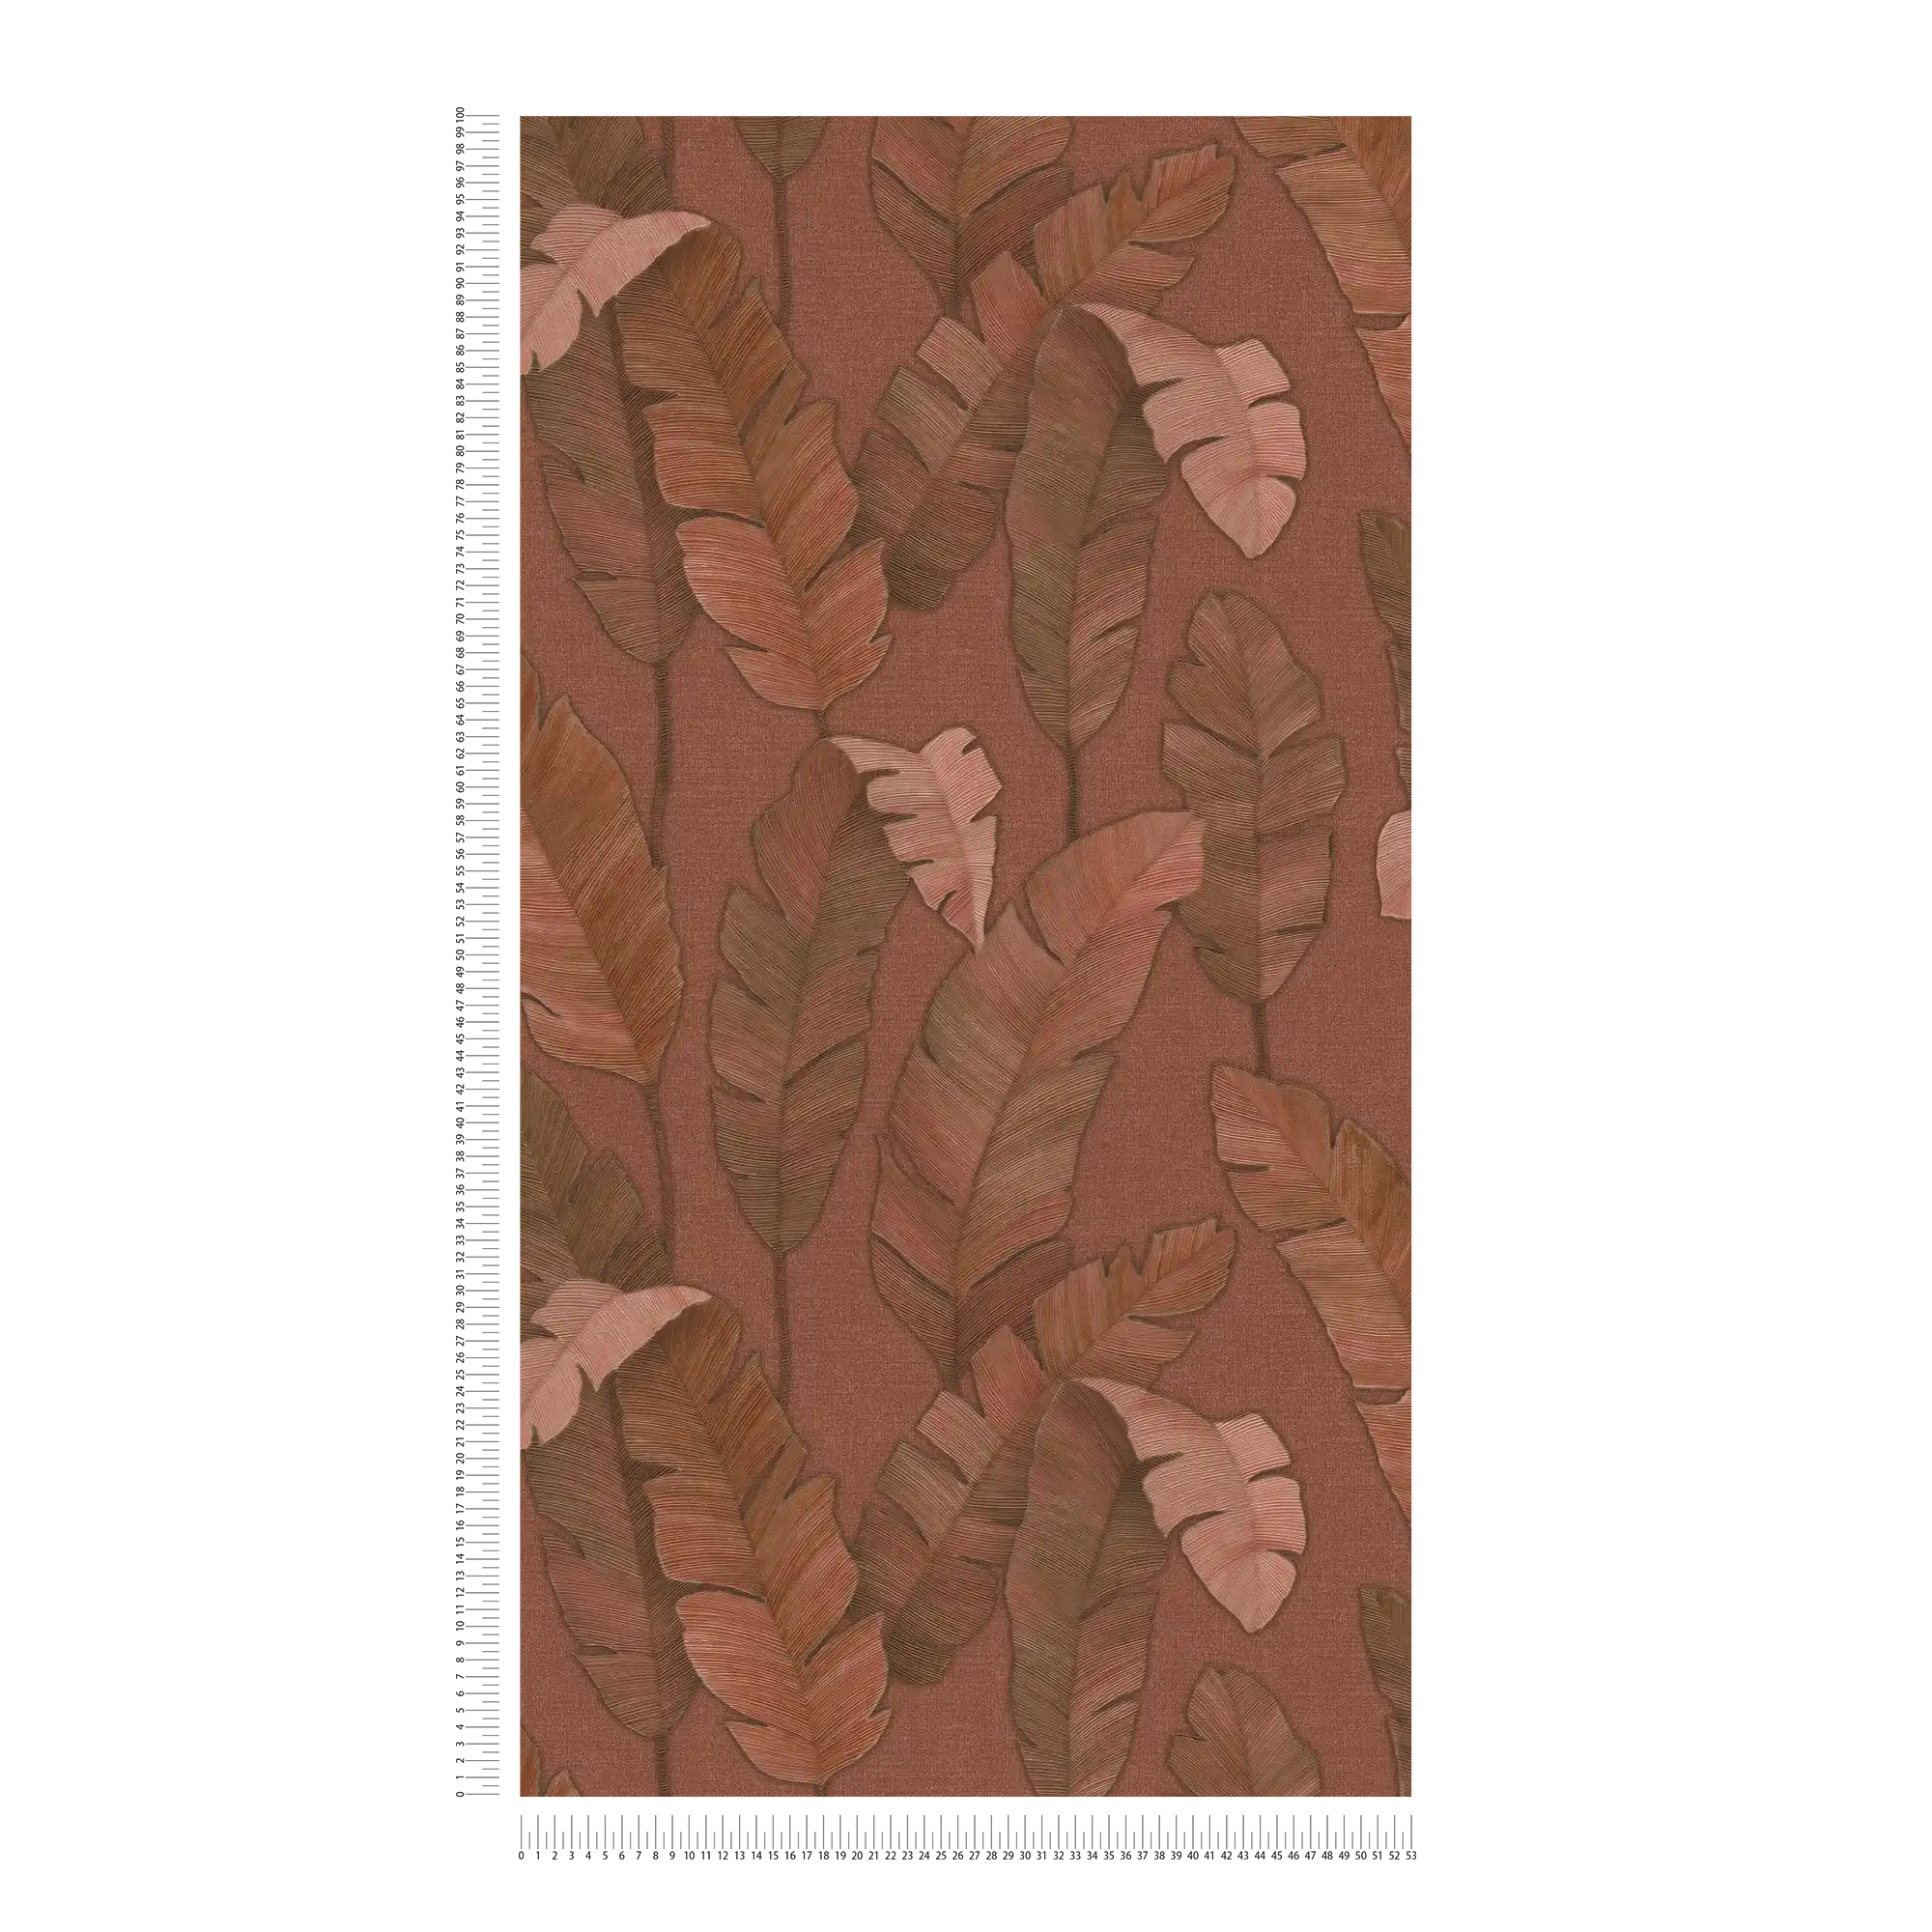             Tropisch vliesbehang met grote palmbladeren - roodbruin
        